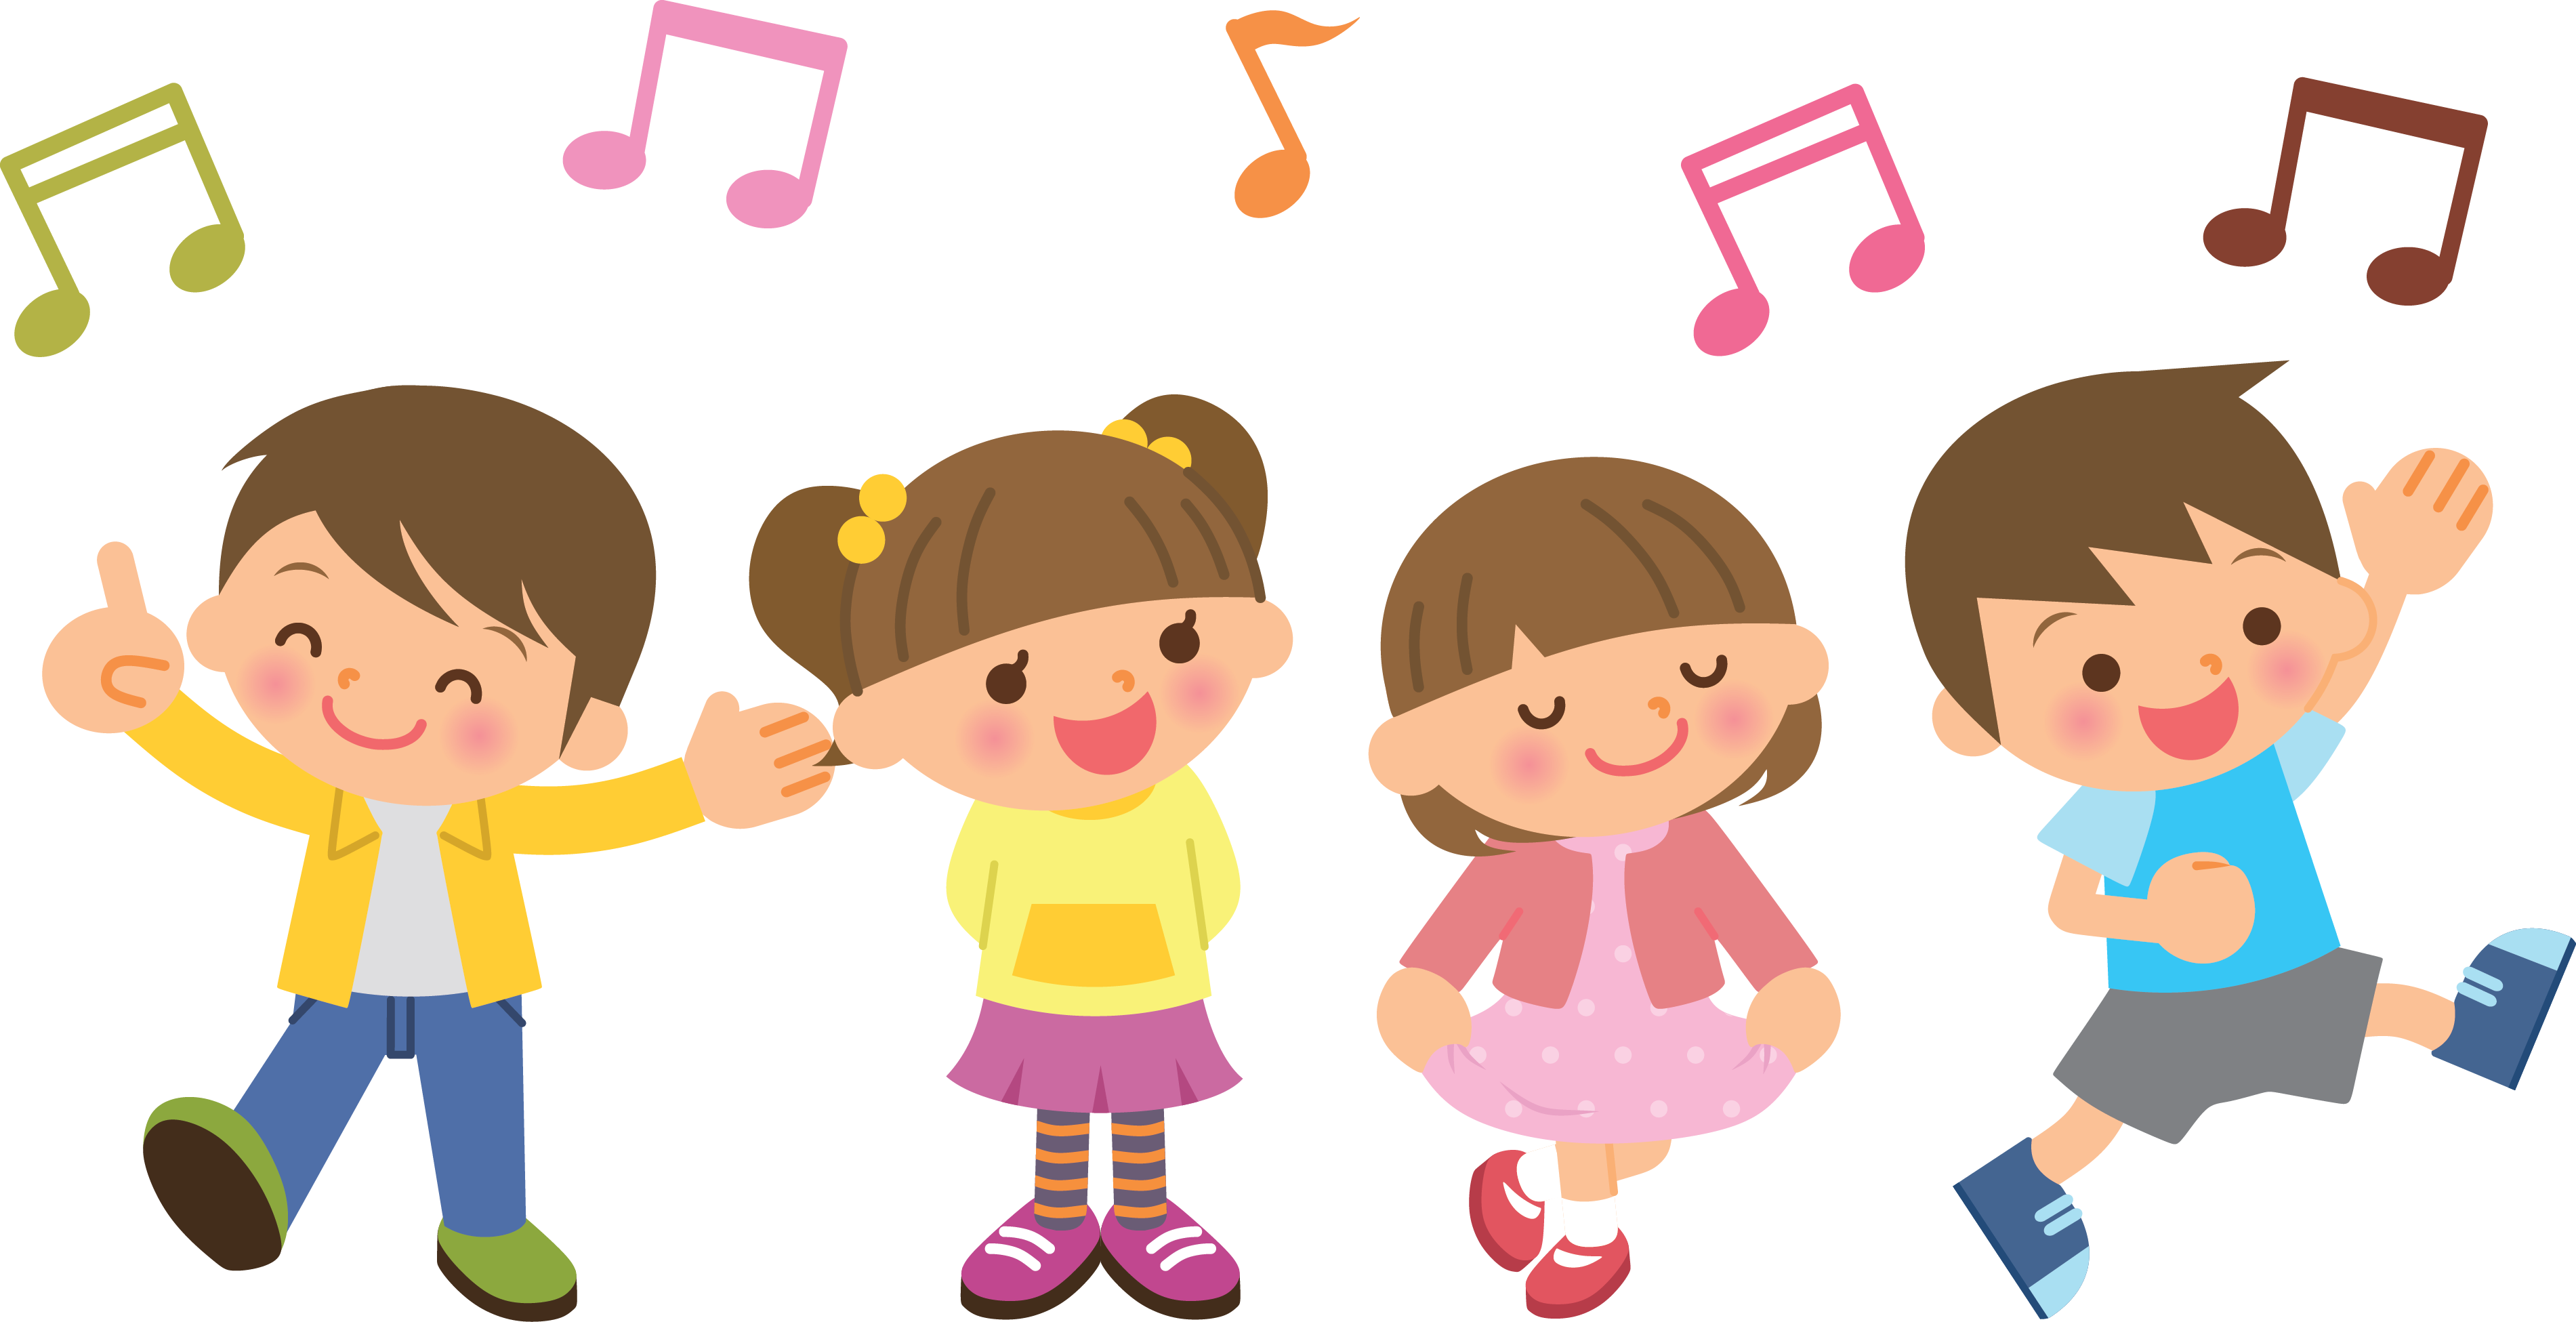 Kids choir incep imagine. Preschool clipart concert